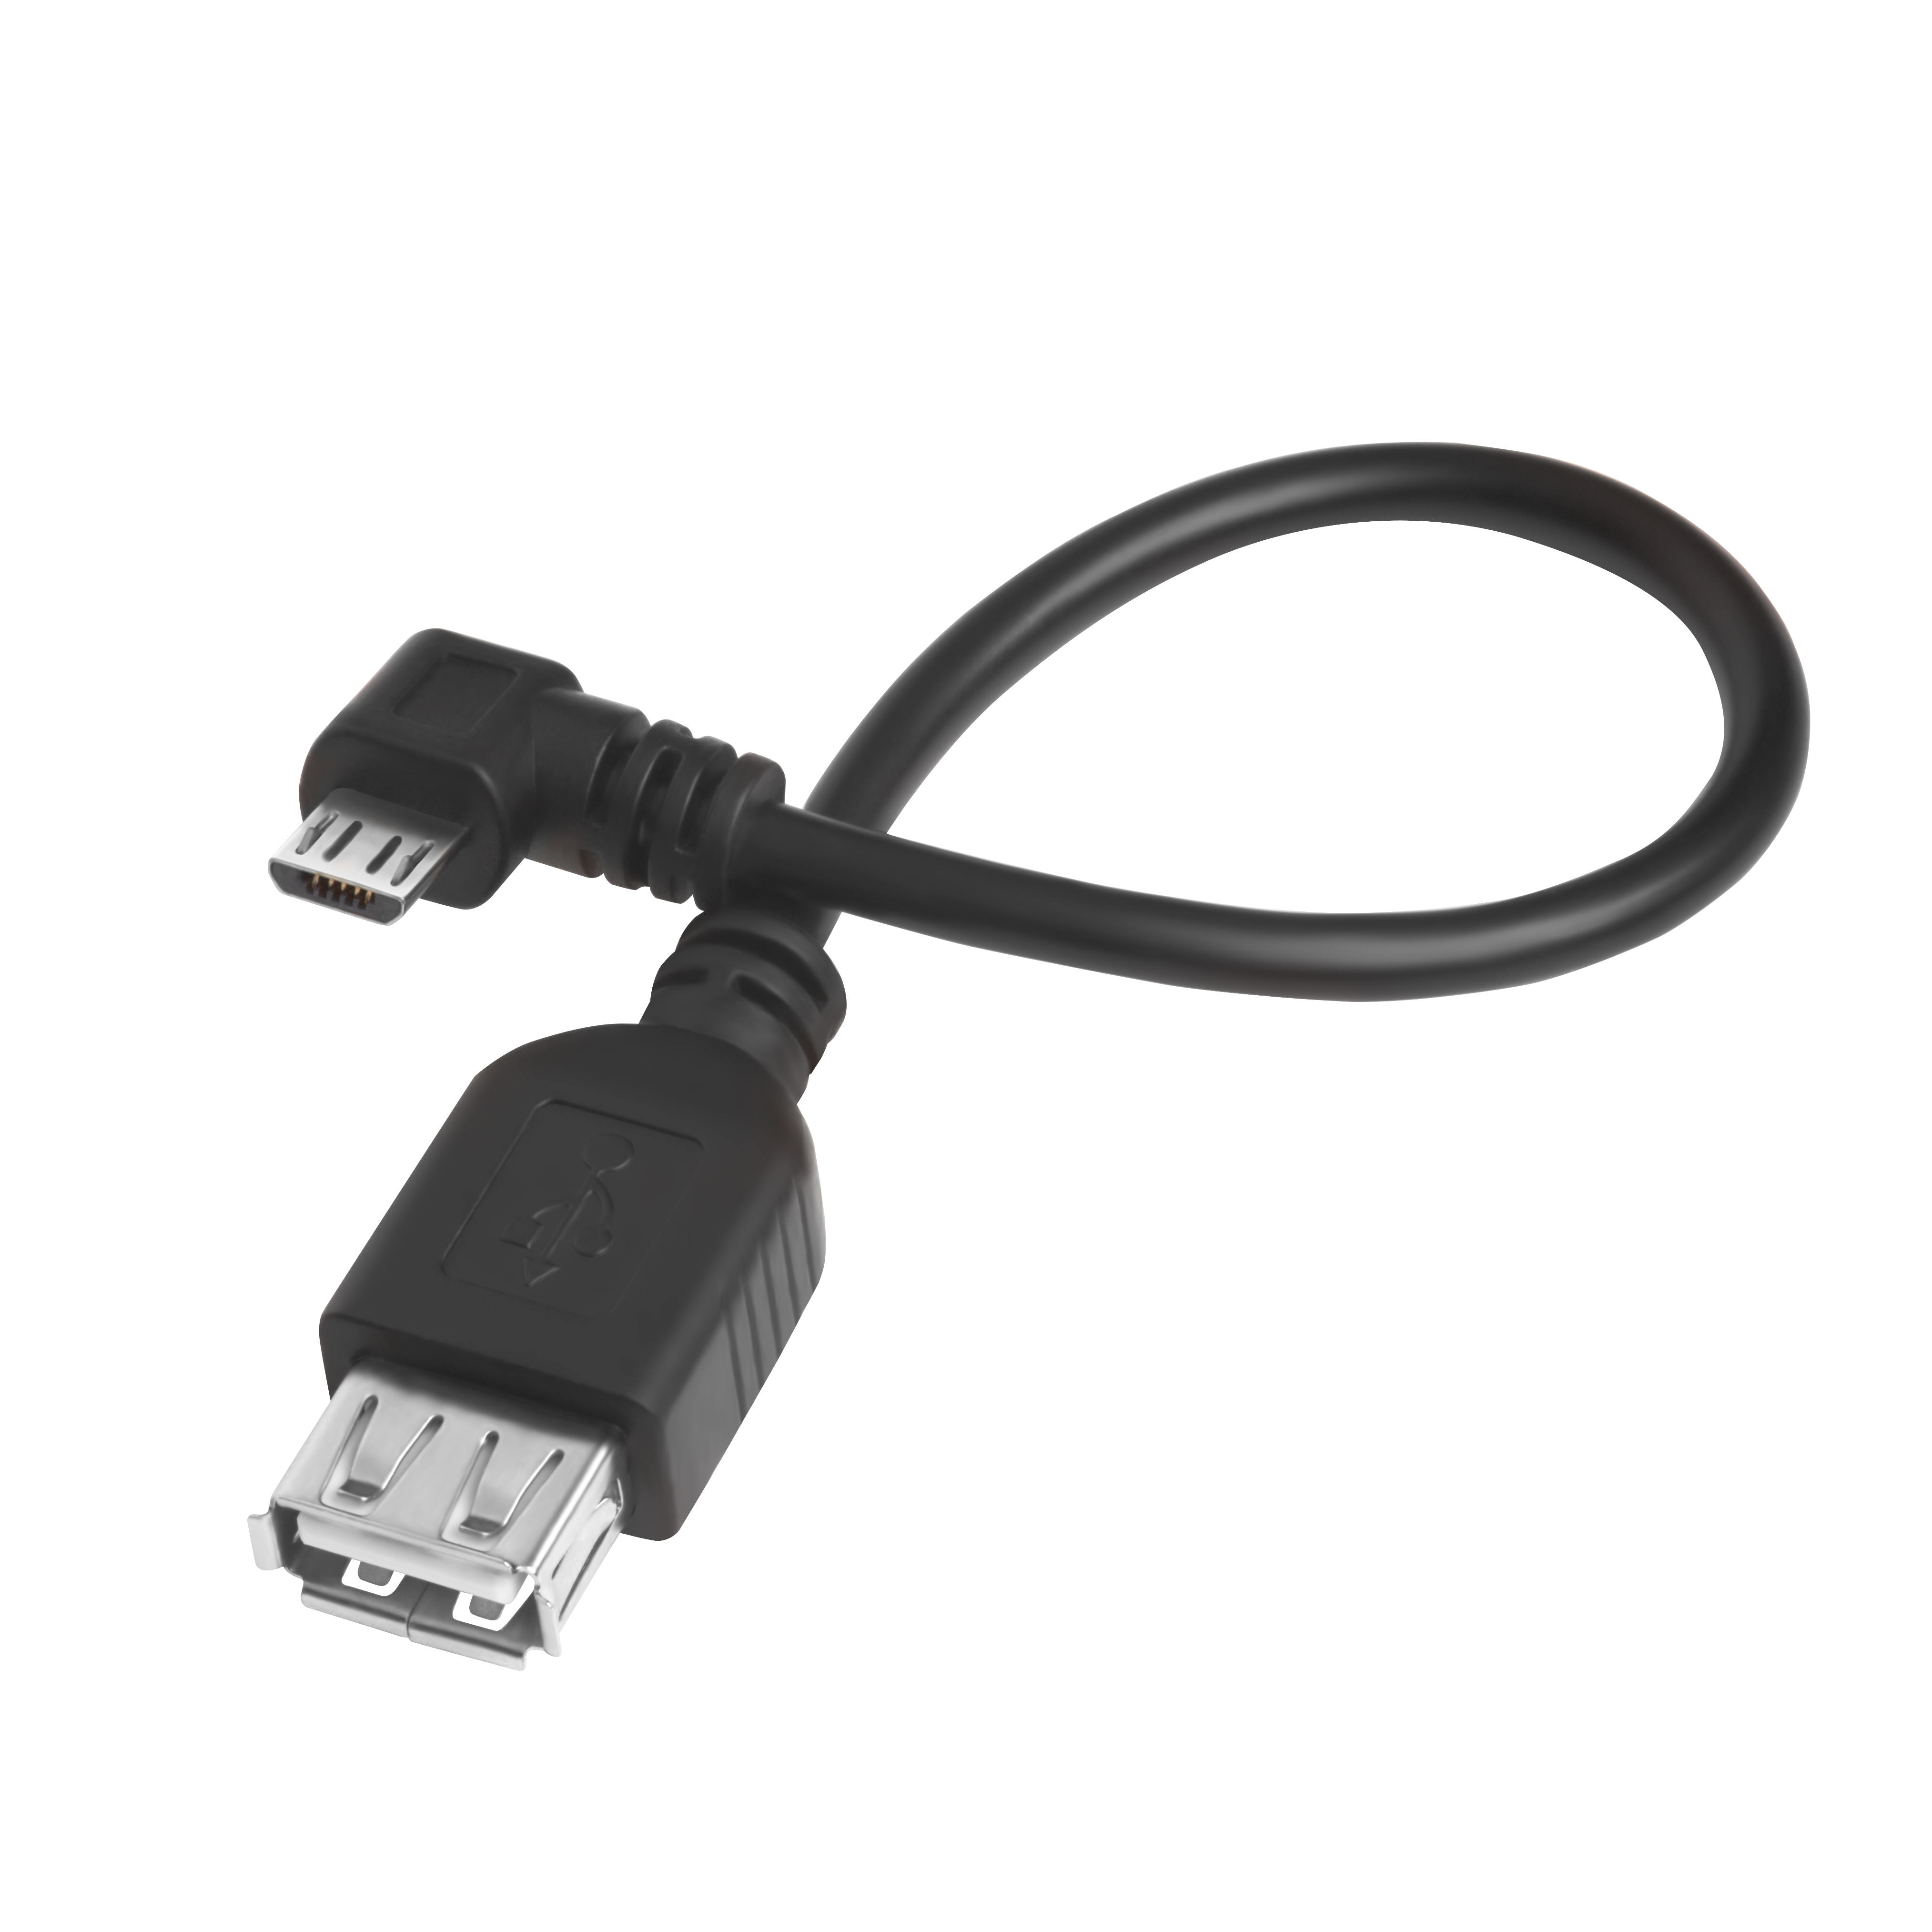 GCR Надежный адаптер переходник OTG 2.0m USB 2.0, microB 5pin угловой коннектор, черный, двойное экранирование, морозостойкий